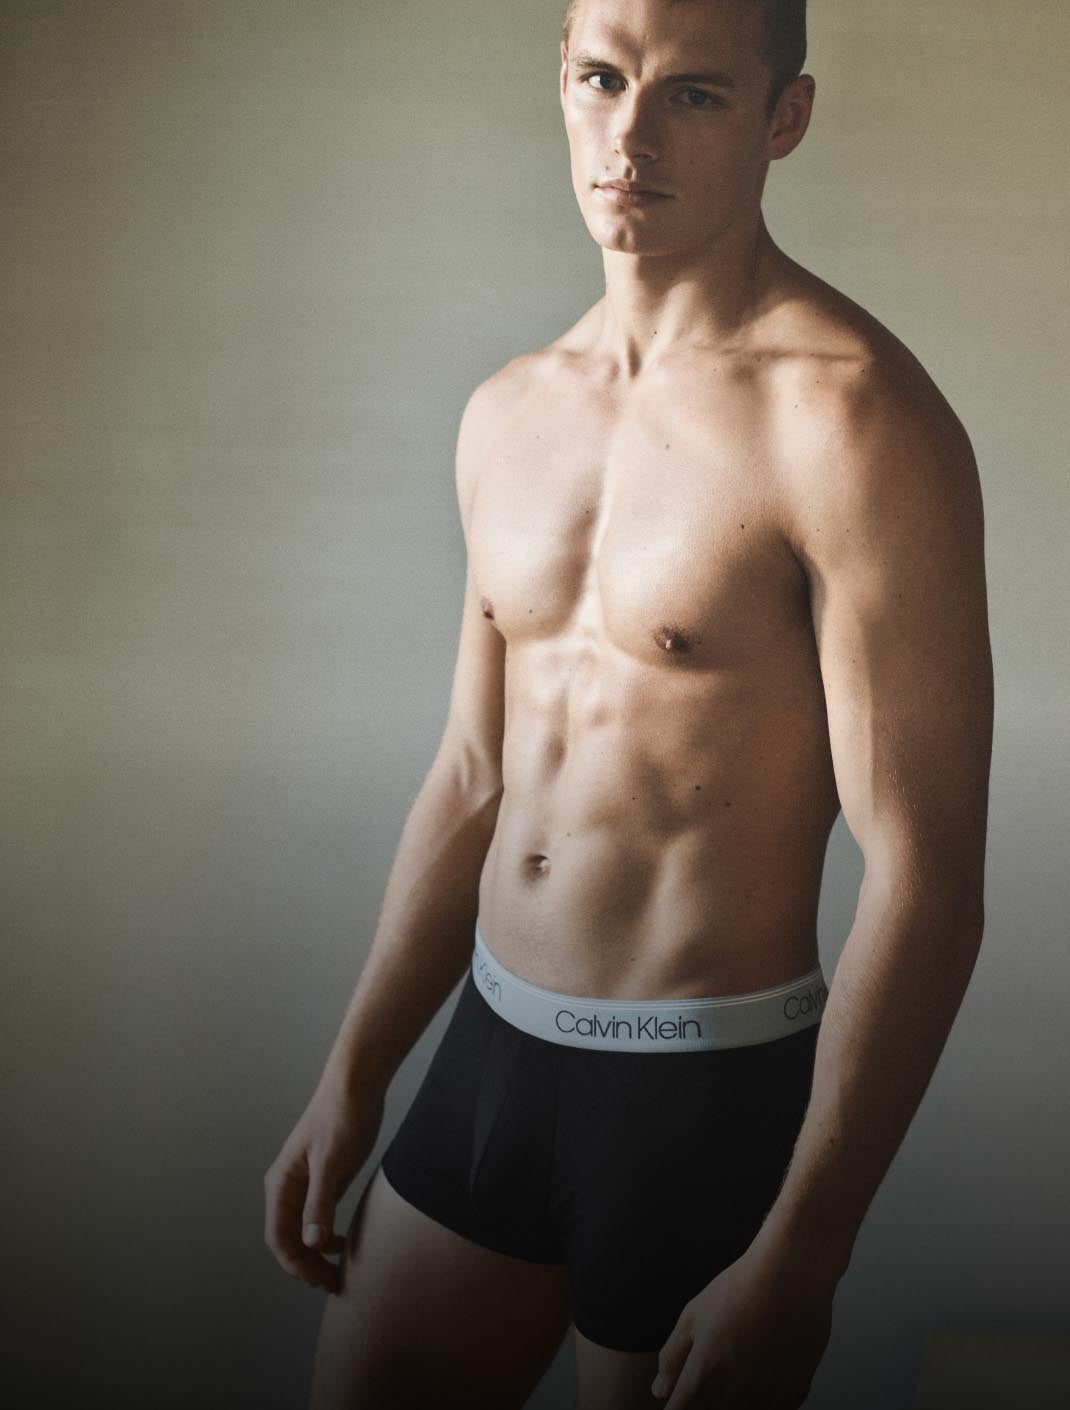 Calvin Klein Underwear – Browse Fashions for Men